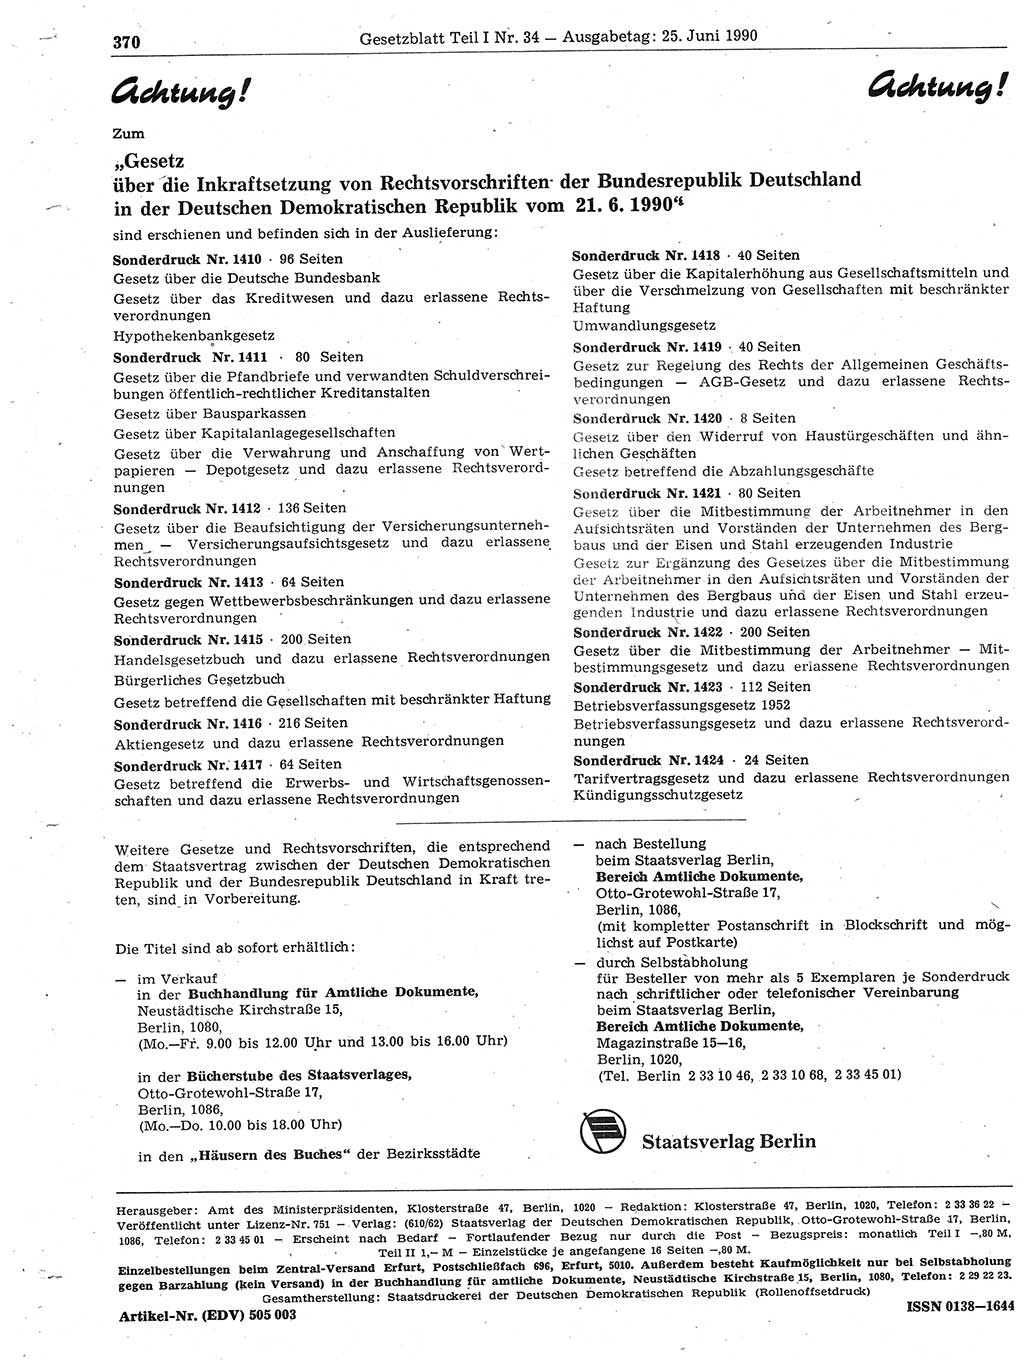 Gesetzblatt (GBl.) der Deutschen Demokratischen Republik (DDR) Teil Ⅰ 1990, Seite 370 (GBl. DDR Ⅰ 1990, S. 370)